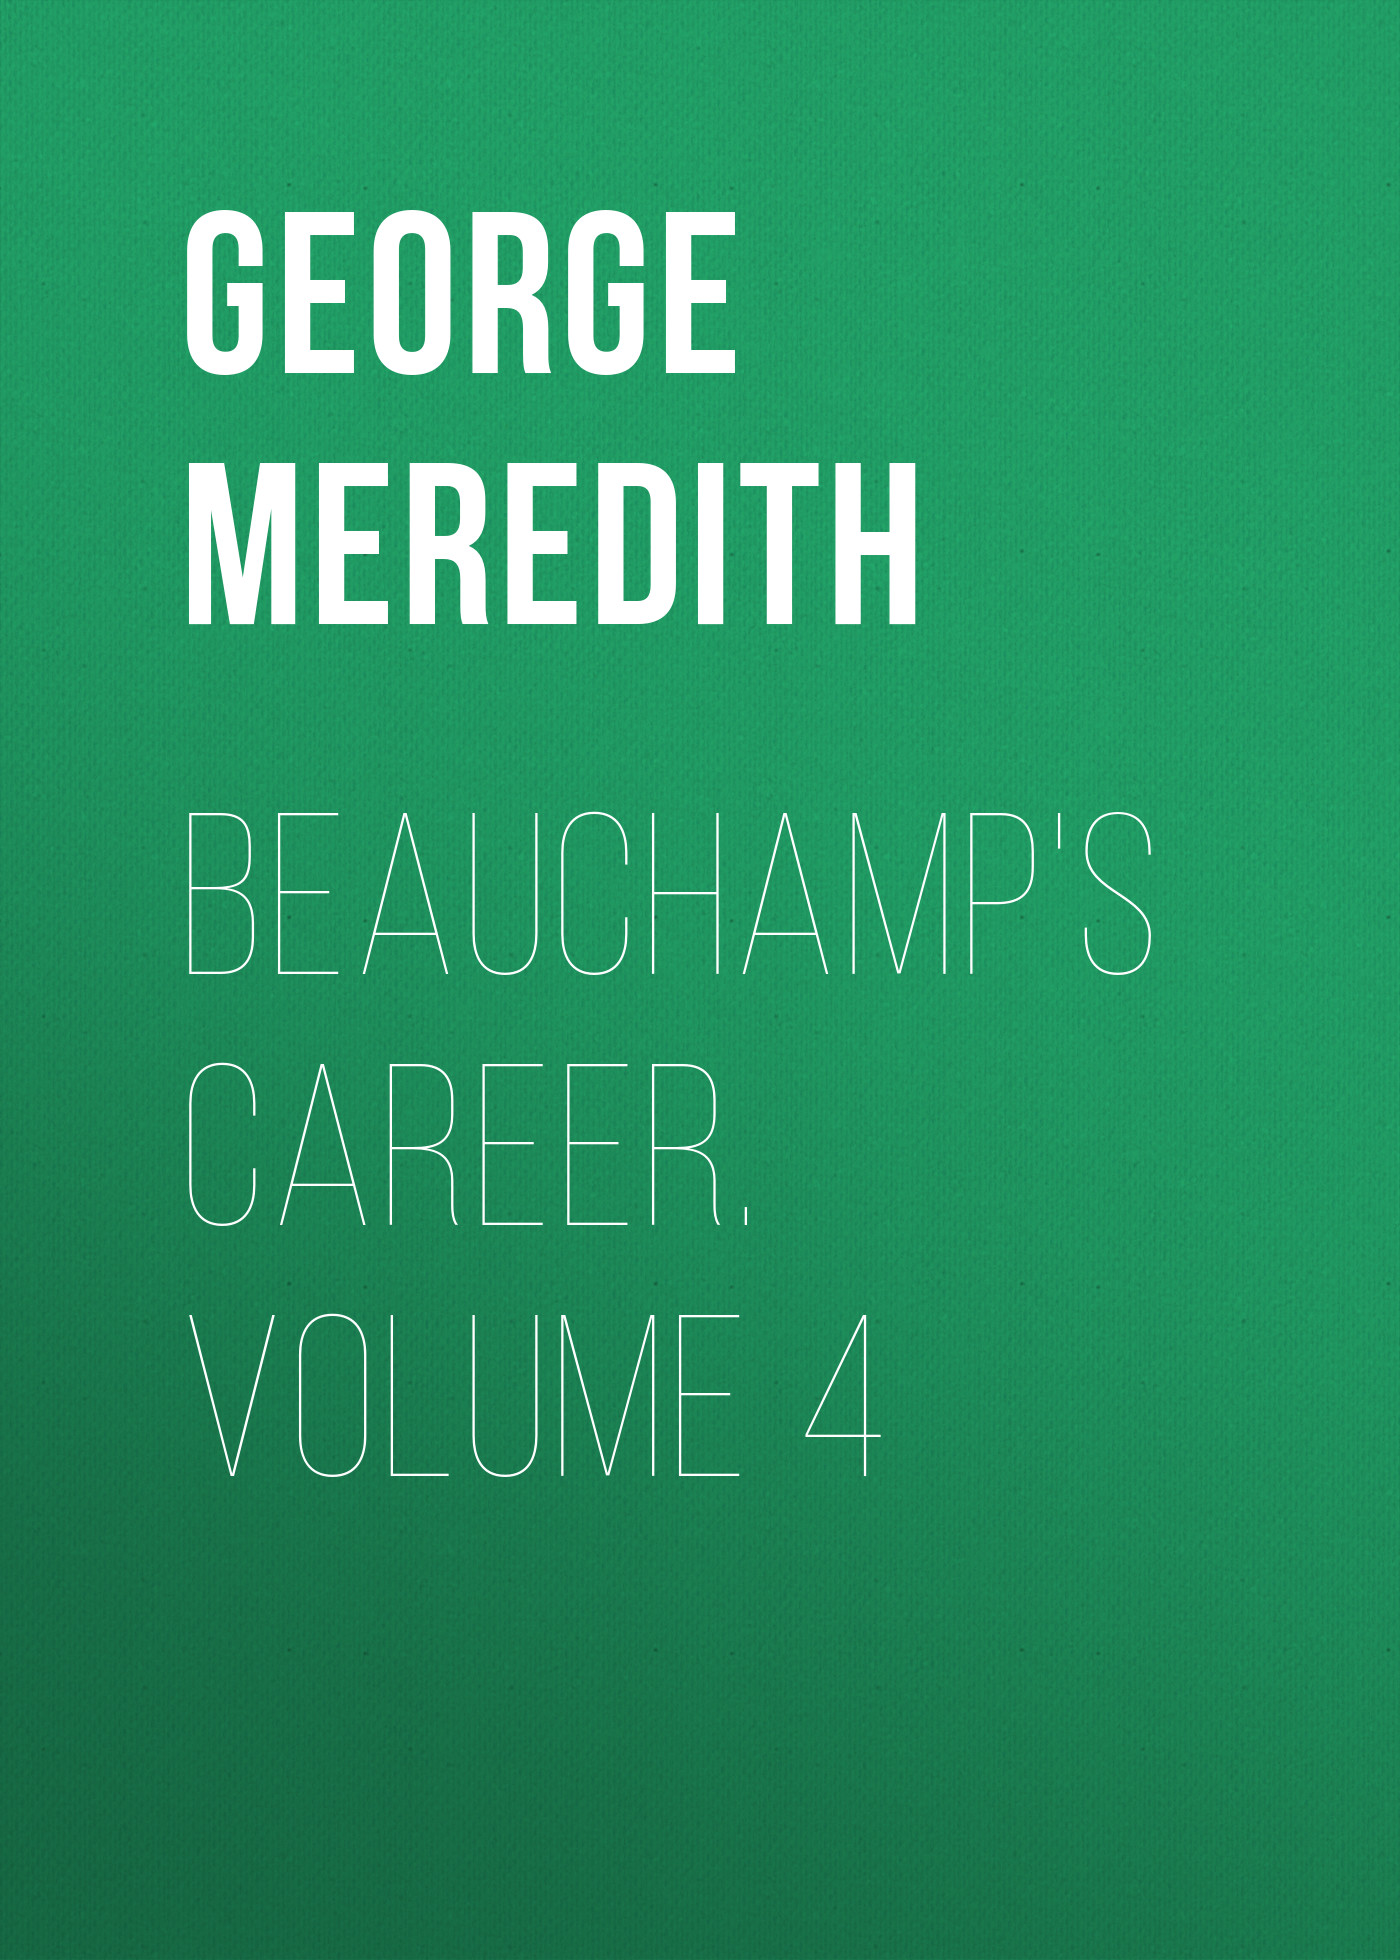 Книга Beauchamp's Career. Volume 4 из серии , созданная George Meredith, может относится к жанру Зарубежная классика, Литература 19 века, Зарубежная старинная литература. Стоимость электронной книги Beauchamp's Career. Volume 4 с идентификатором 36096309 составляет 0 руб.